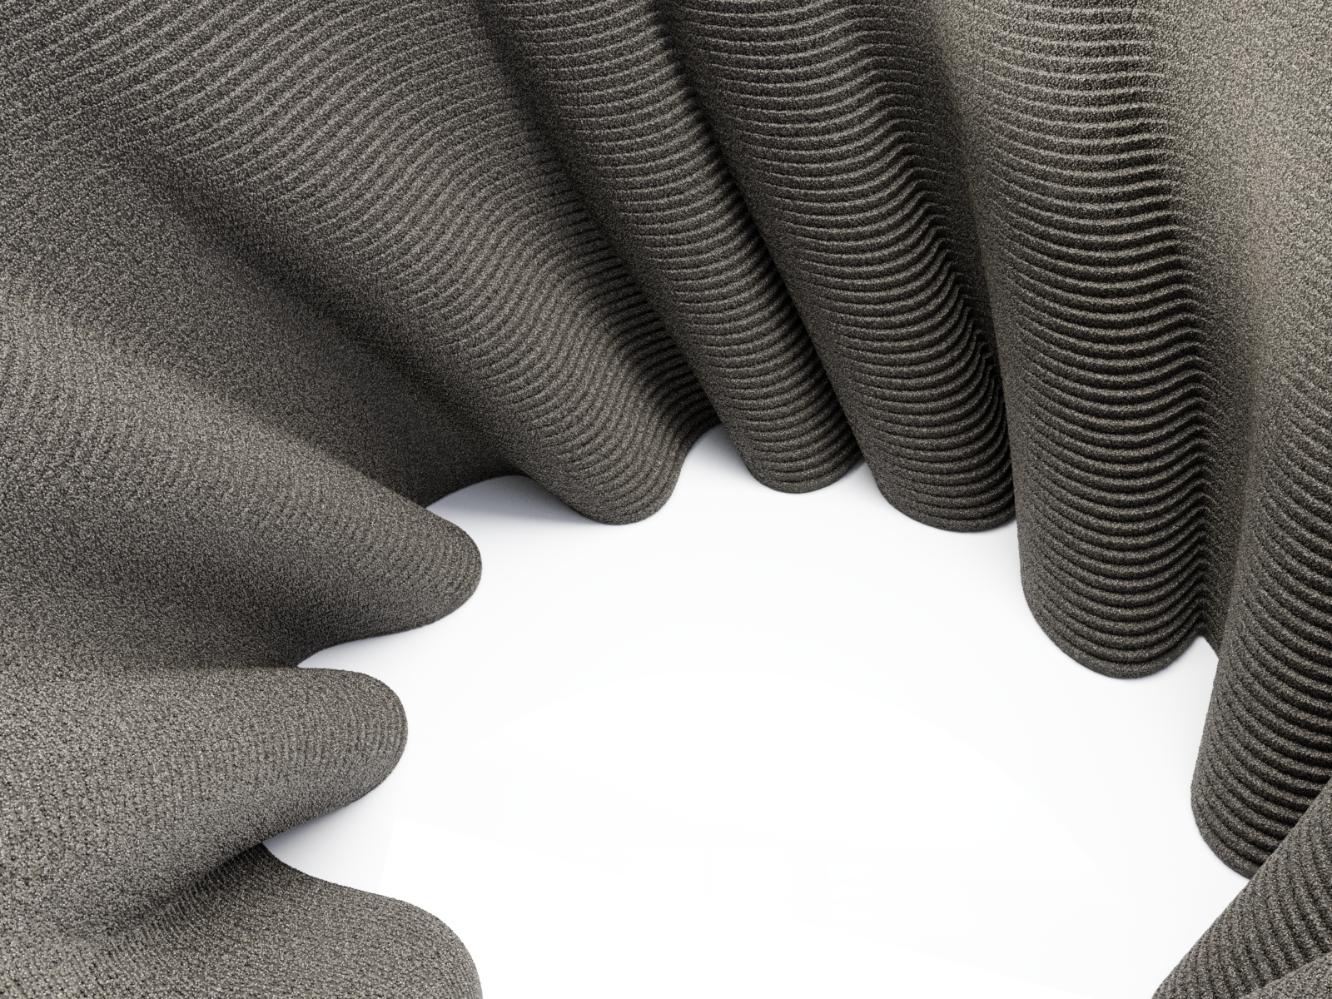 DUNE ist ein moderner, runder Couchtisch, der mit schwarzem Quarzsand 3D-gedruckt wurde und die Grenzen des Machbaren sprengt. Schön, kühn und dynamisch... eine dauerhafte Form entsteht aus einem Hügel, der aus Millionen von Sandpartikeln